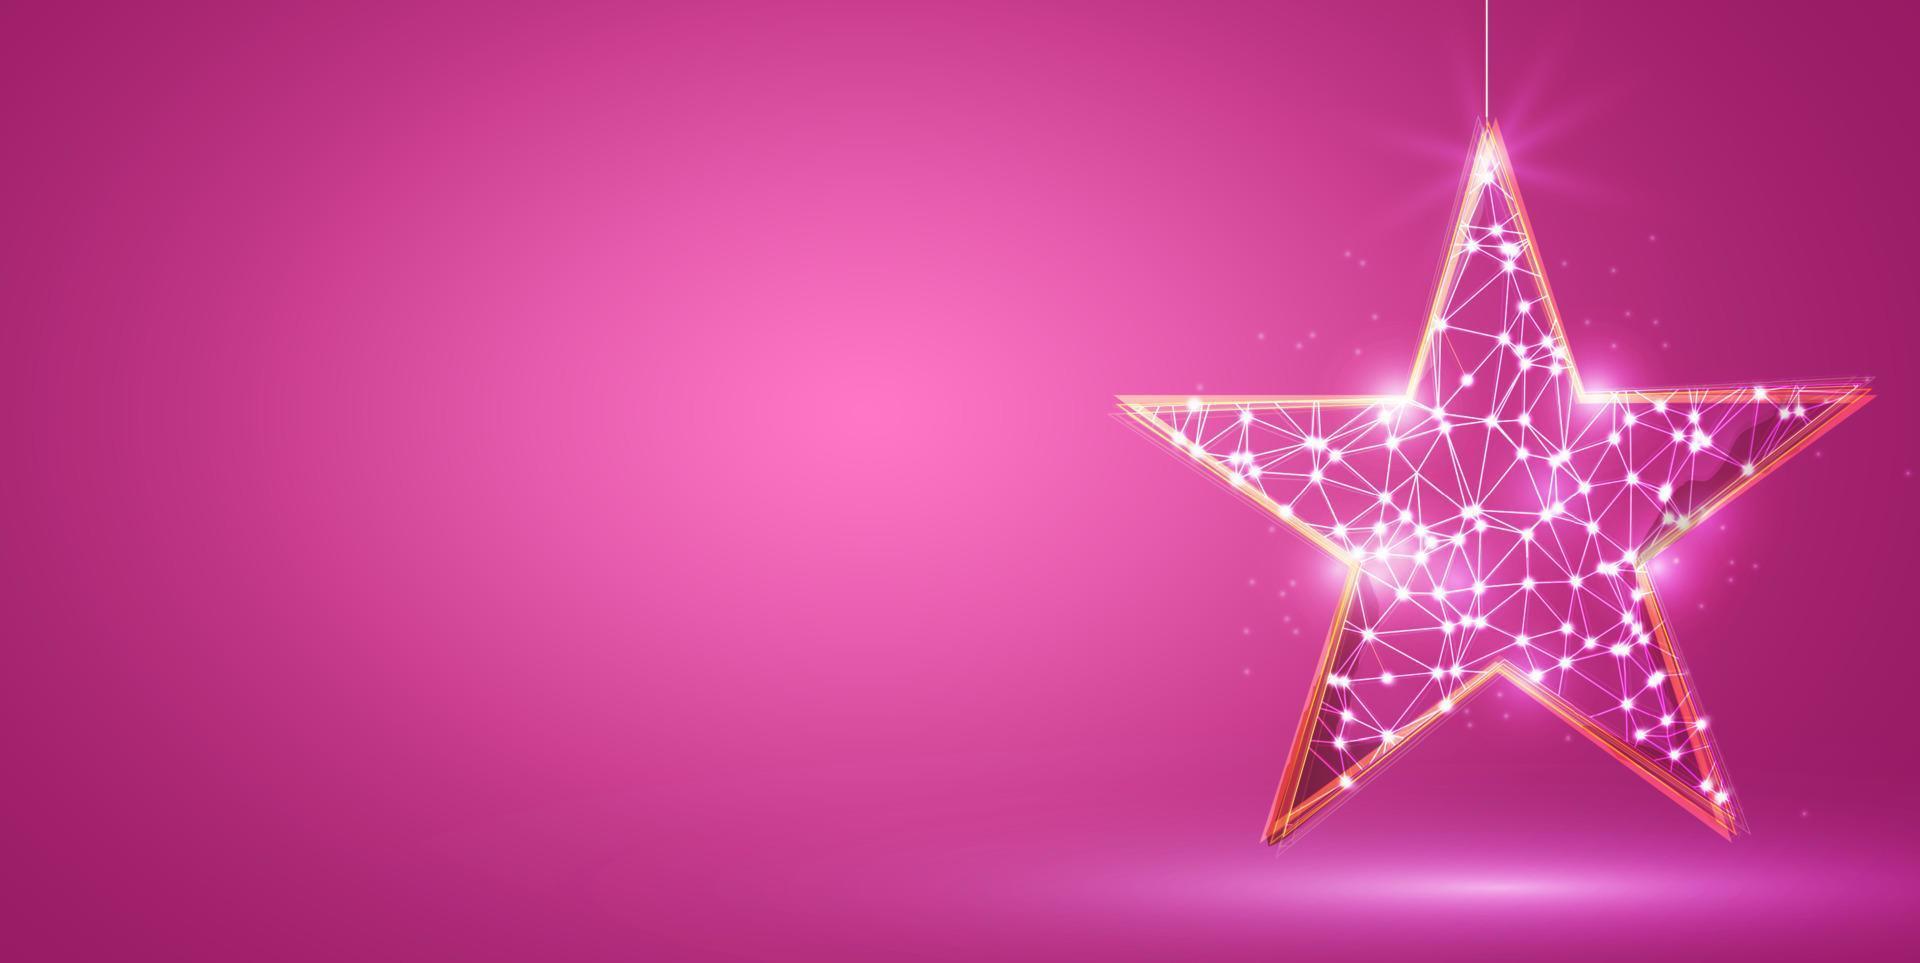 gouden Kerstmis ster met laag poly ontwerp tegen roze achtergrond vector